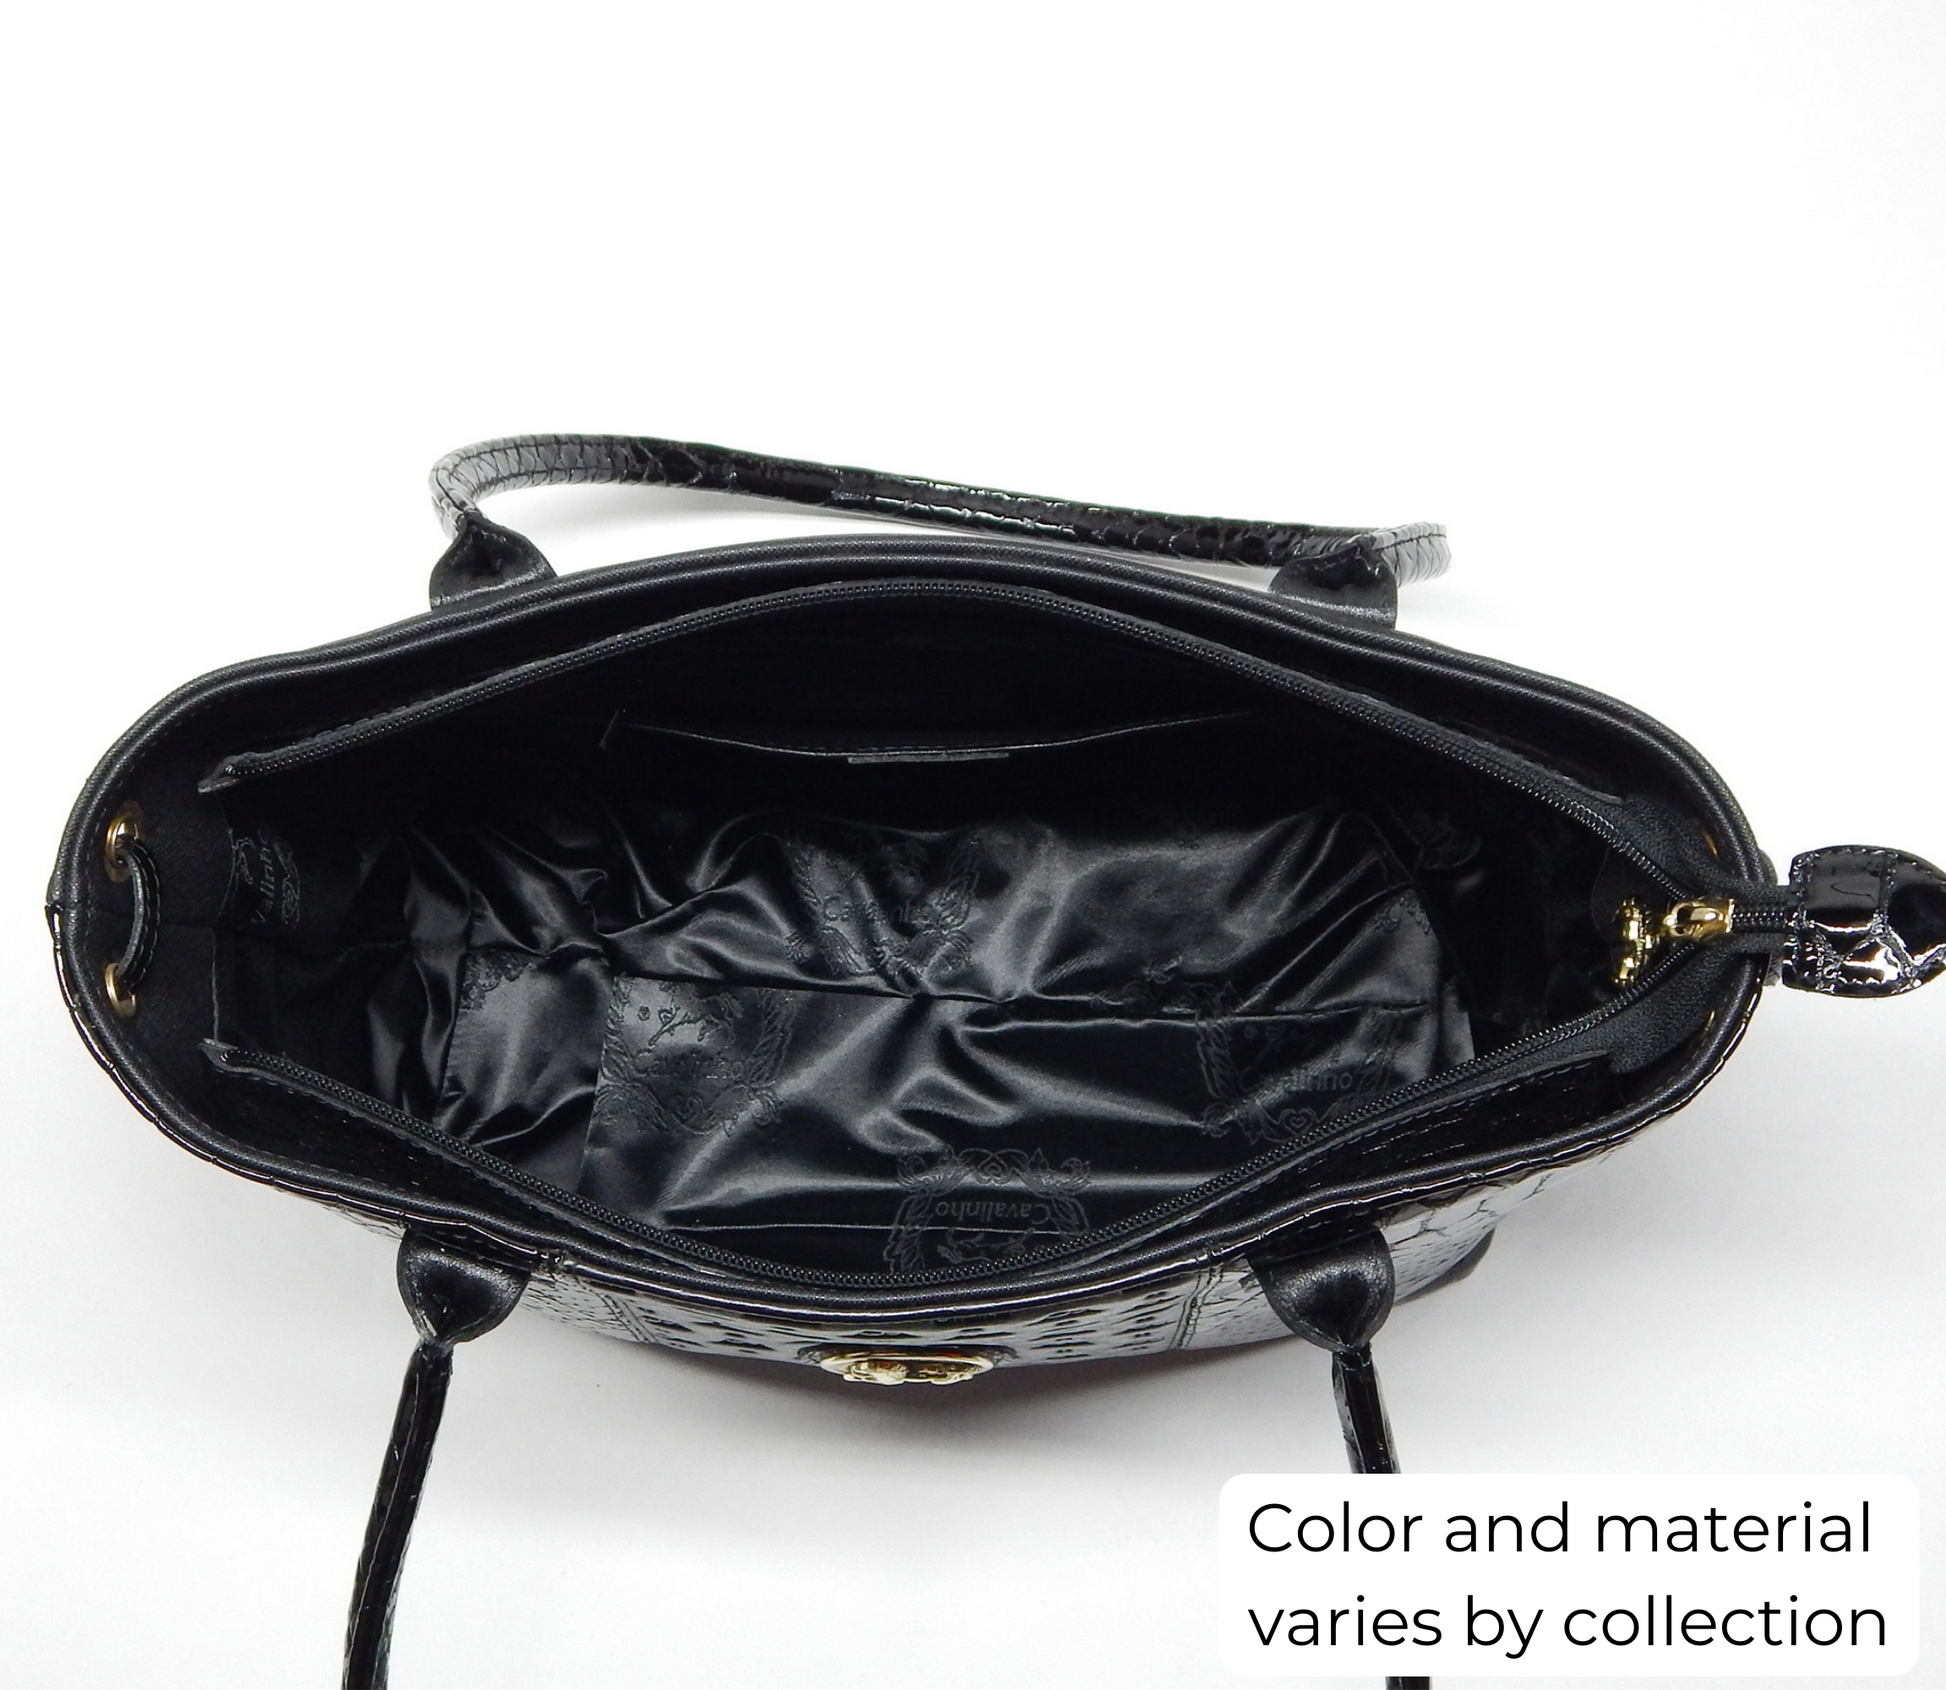 #color_ Black | Cavalinho Di Cavalieri Shoulder Bag - Black - inside_0359_37921e58-4b77-44fa-9a2e-945ef5d9e58f